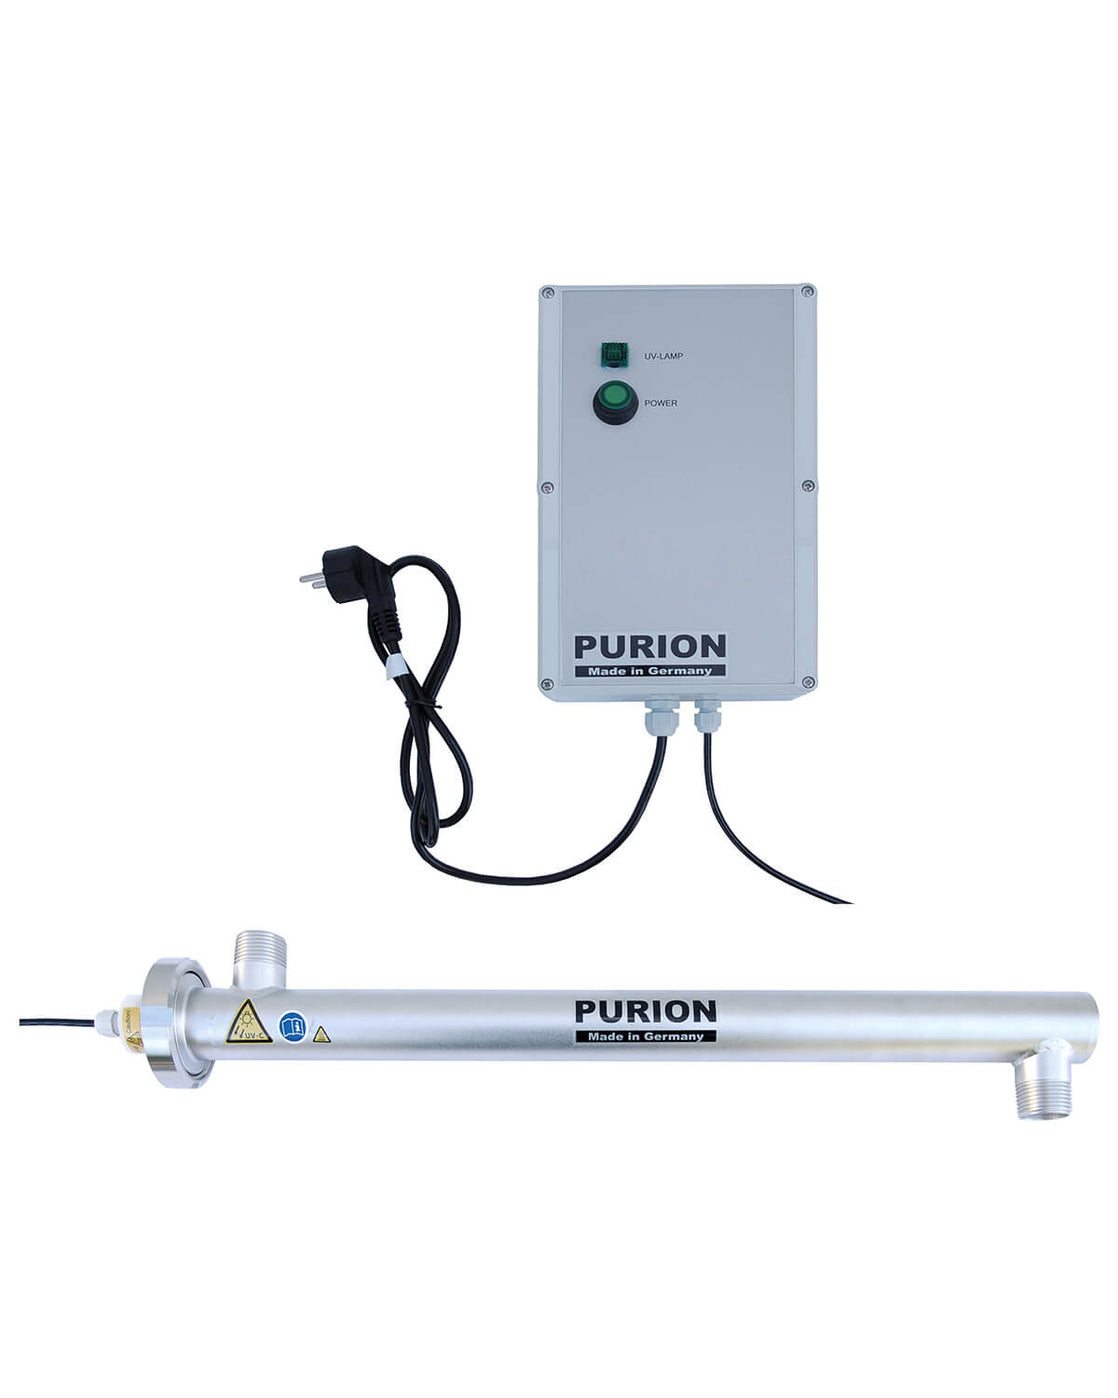 Der PURION 2000 Basic der PURION GmbH ist ein leistungsstarkes UV-Strahlersystem zur Reinigung von Trinkwasser.